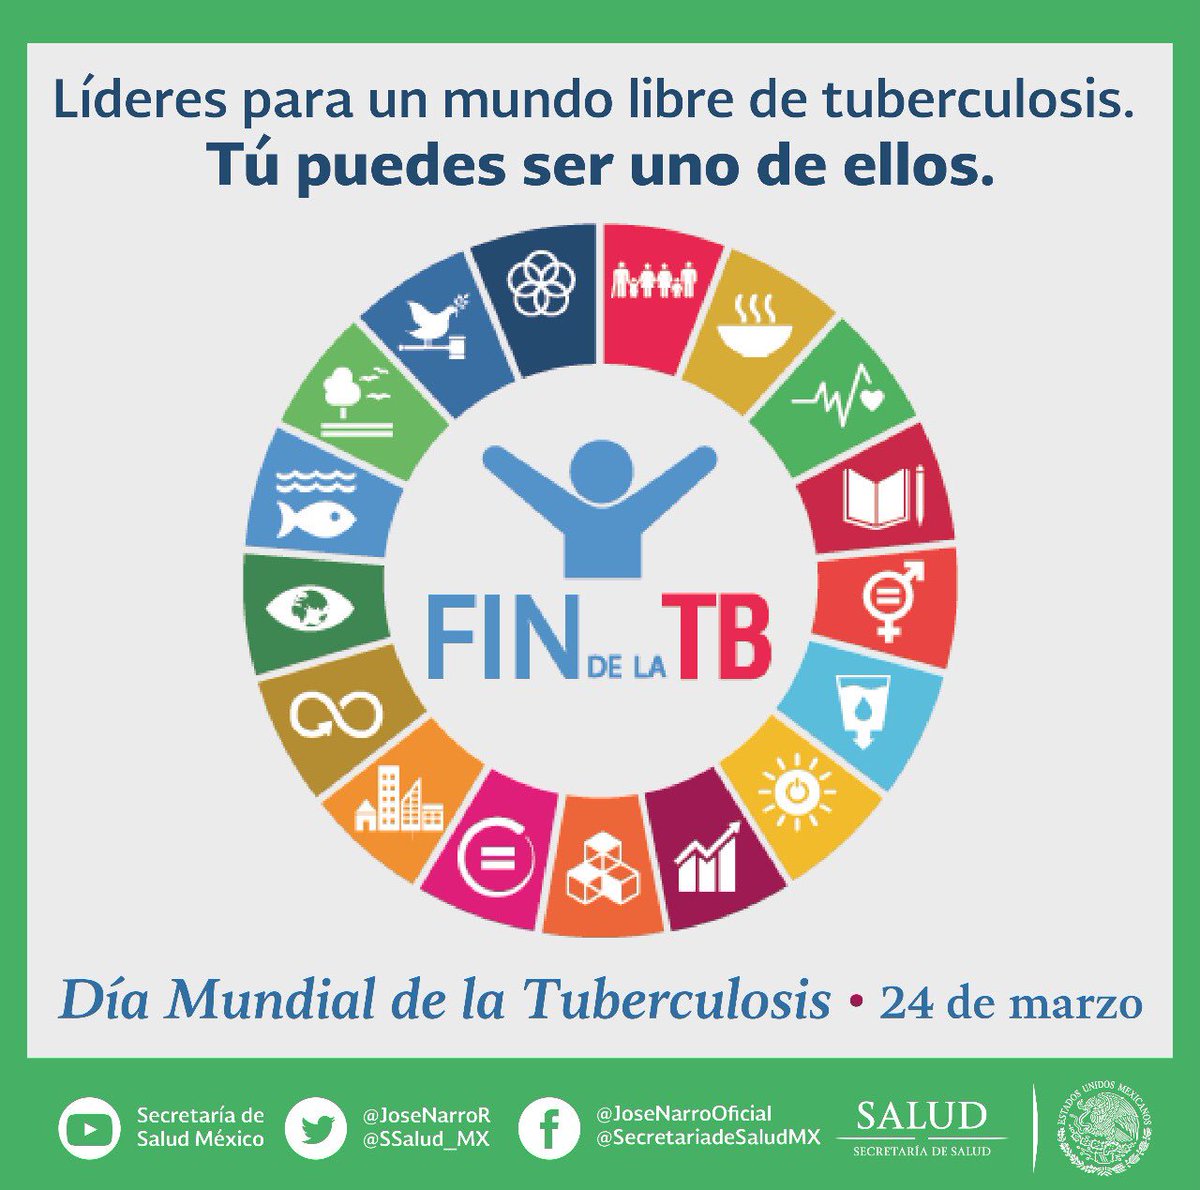 Necesitamos líderes para tener un mundo libre de #tuberculosis. #DíaMundialDeLaTuberculosis #FinDeLaTB #EndTB